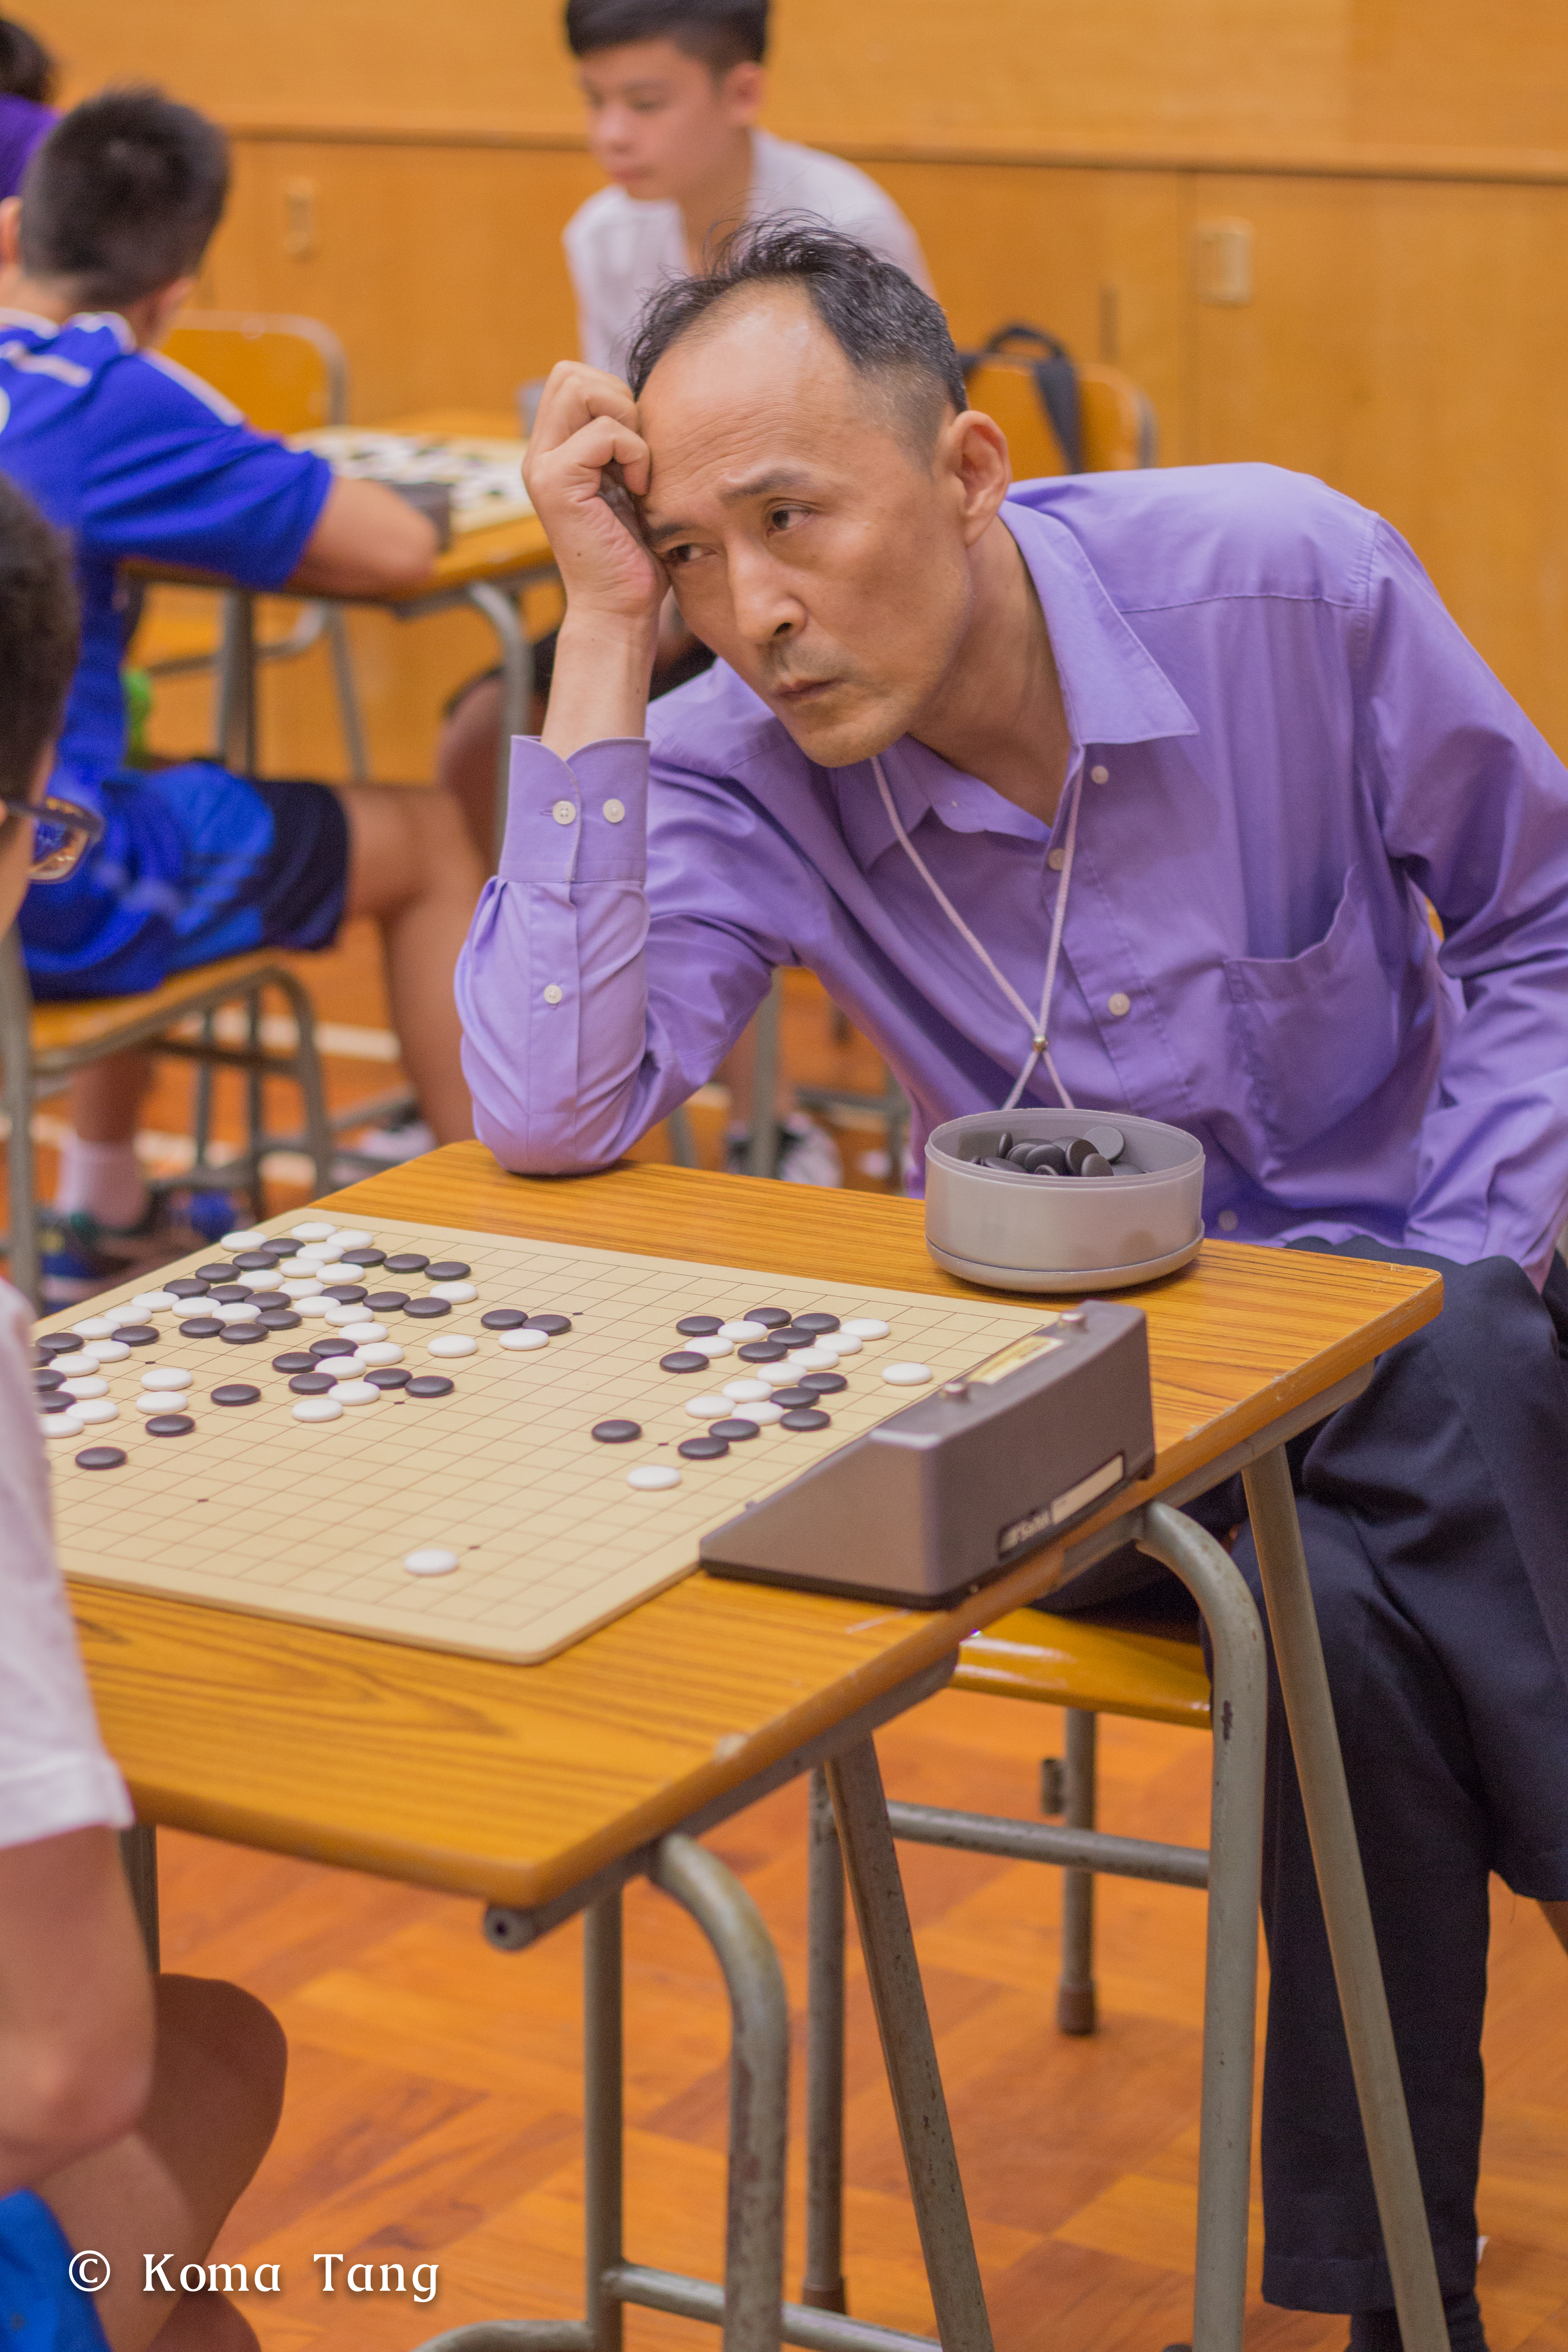 Koma Tang之攝影師紀錄: 圍棋比賽活動攝影